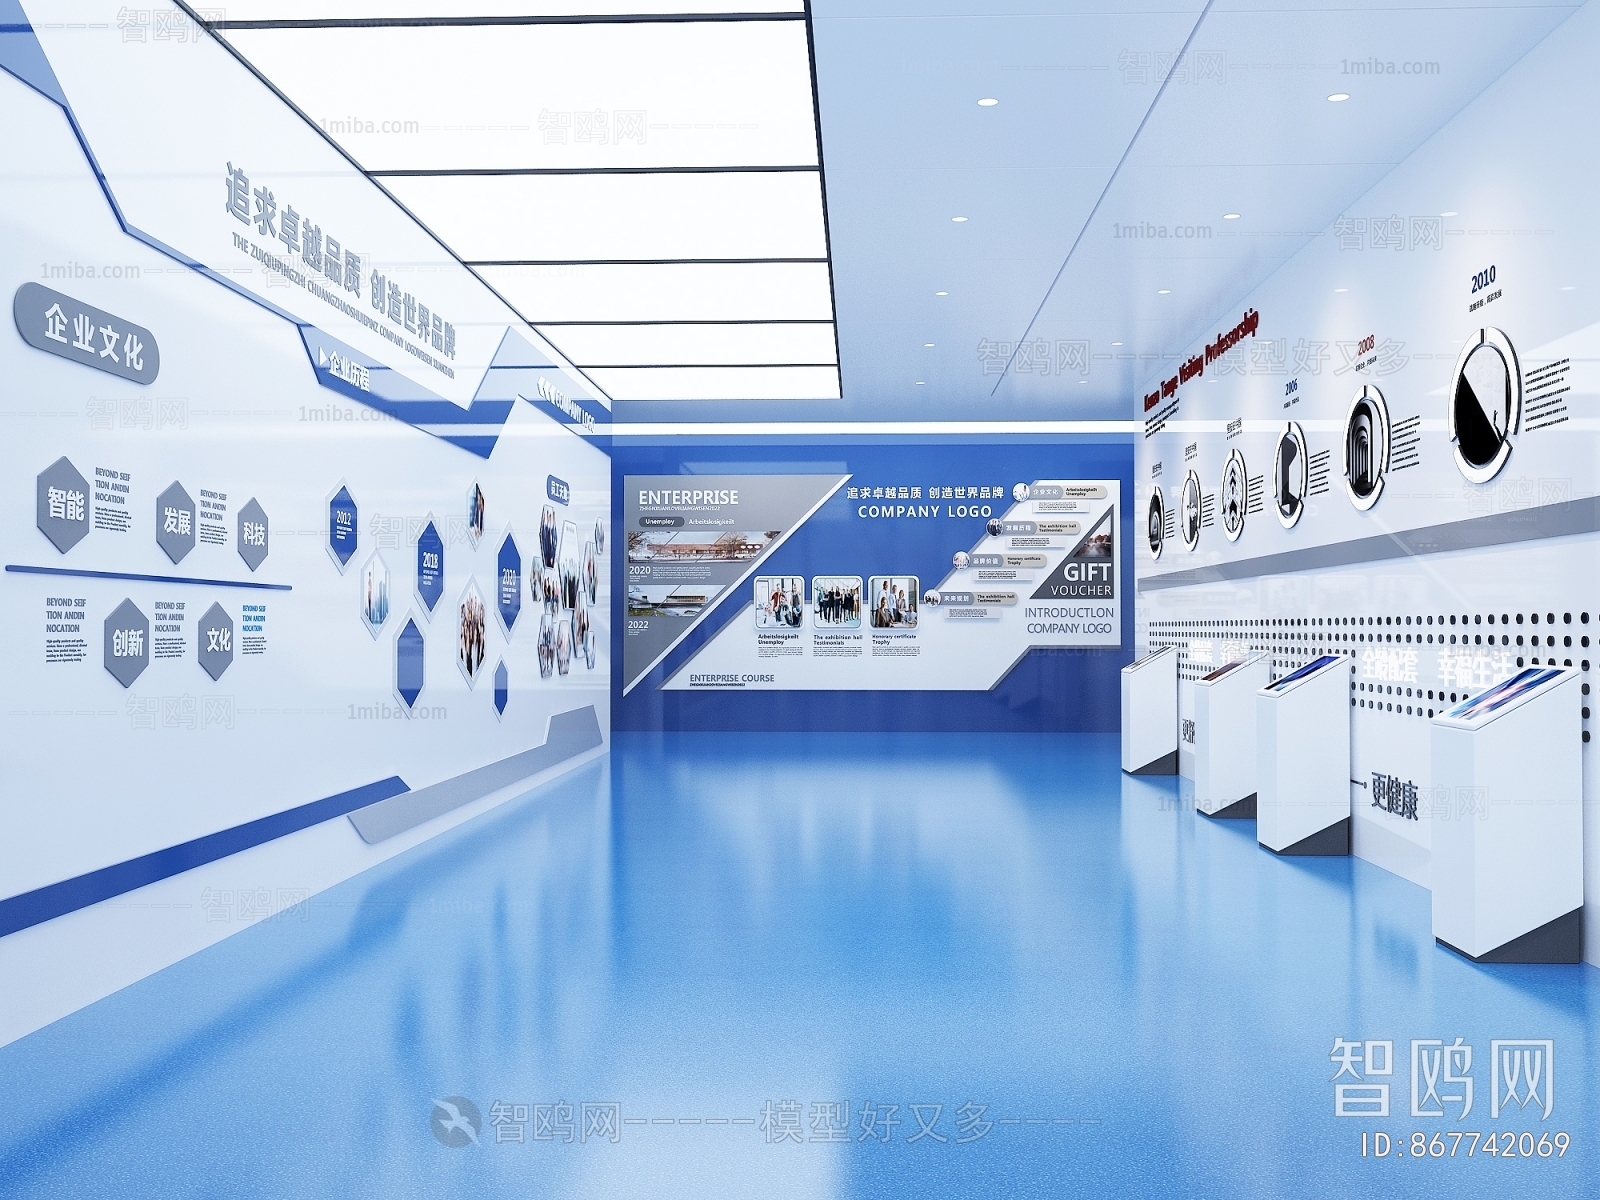 Modern Exhibition Hall